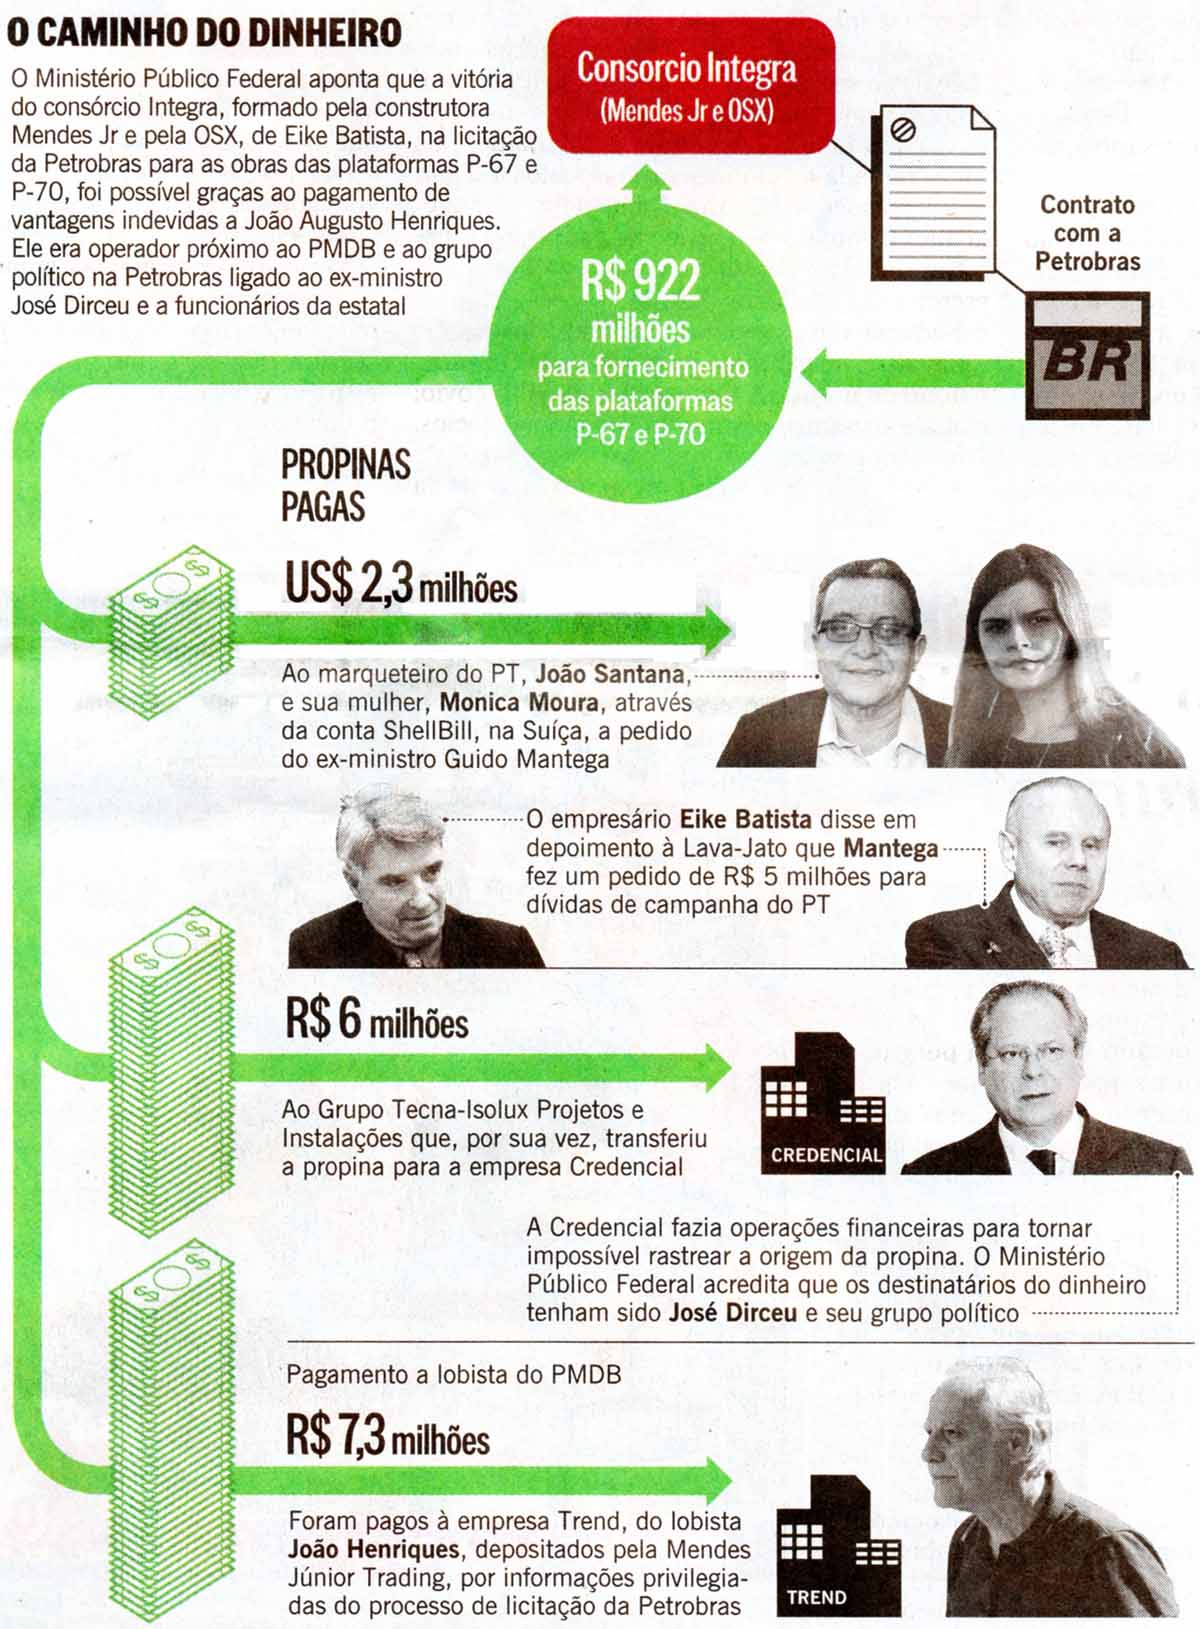 Operao Arquivo X: O caminho do dinheiro - O Globo